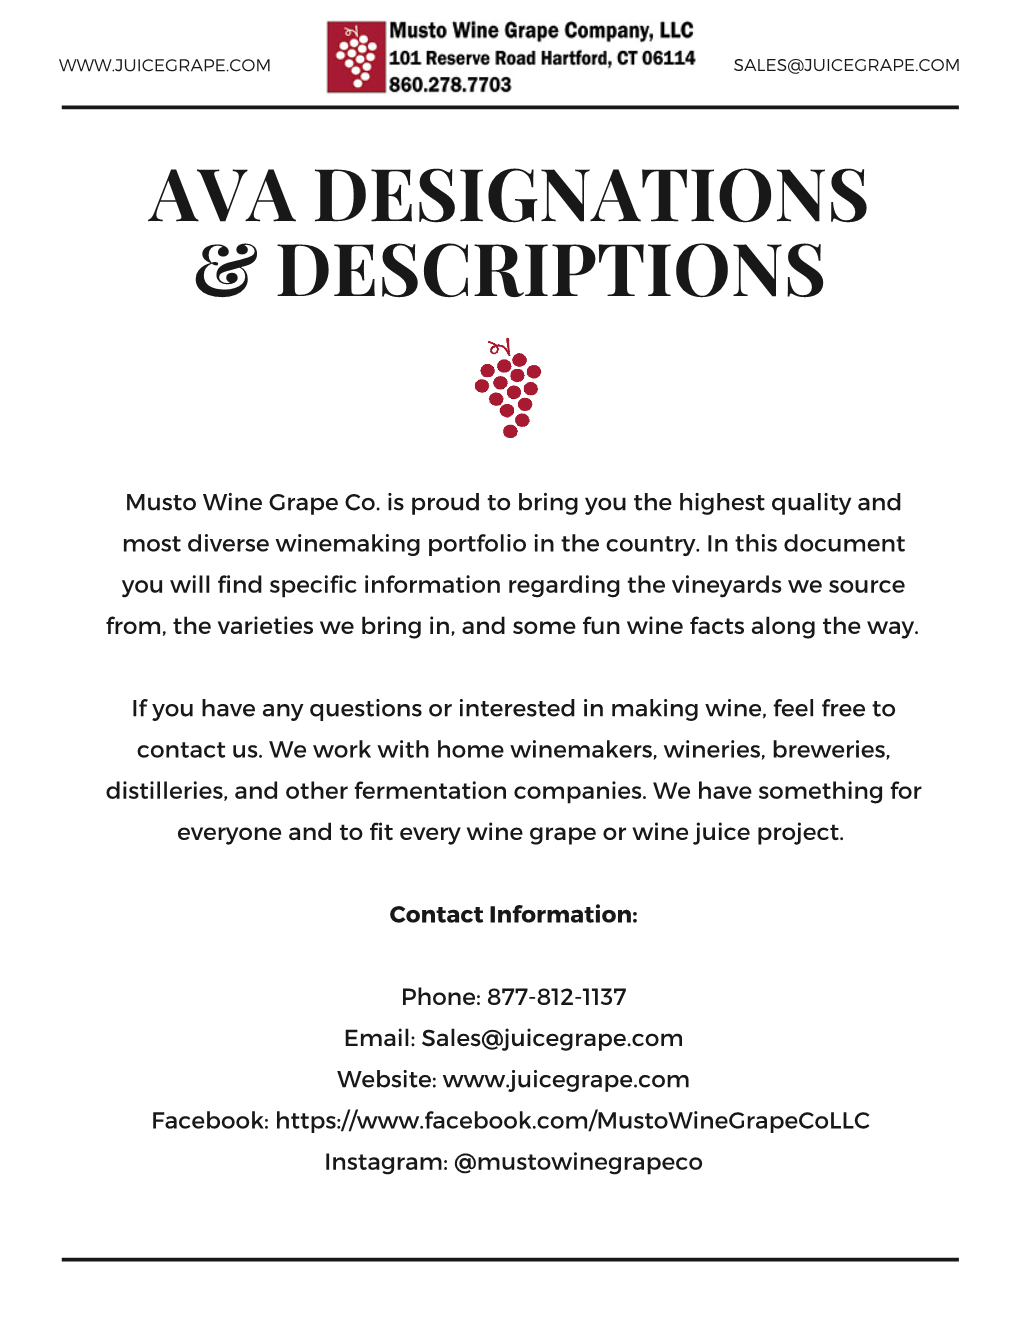 Ava Designations & Descriptions